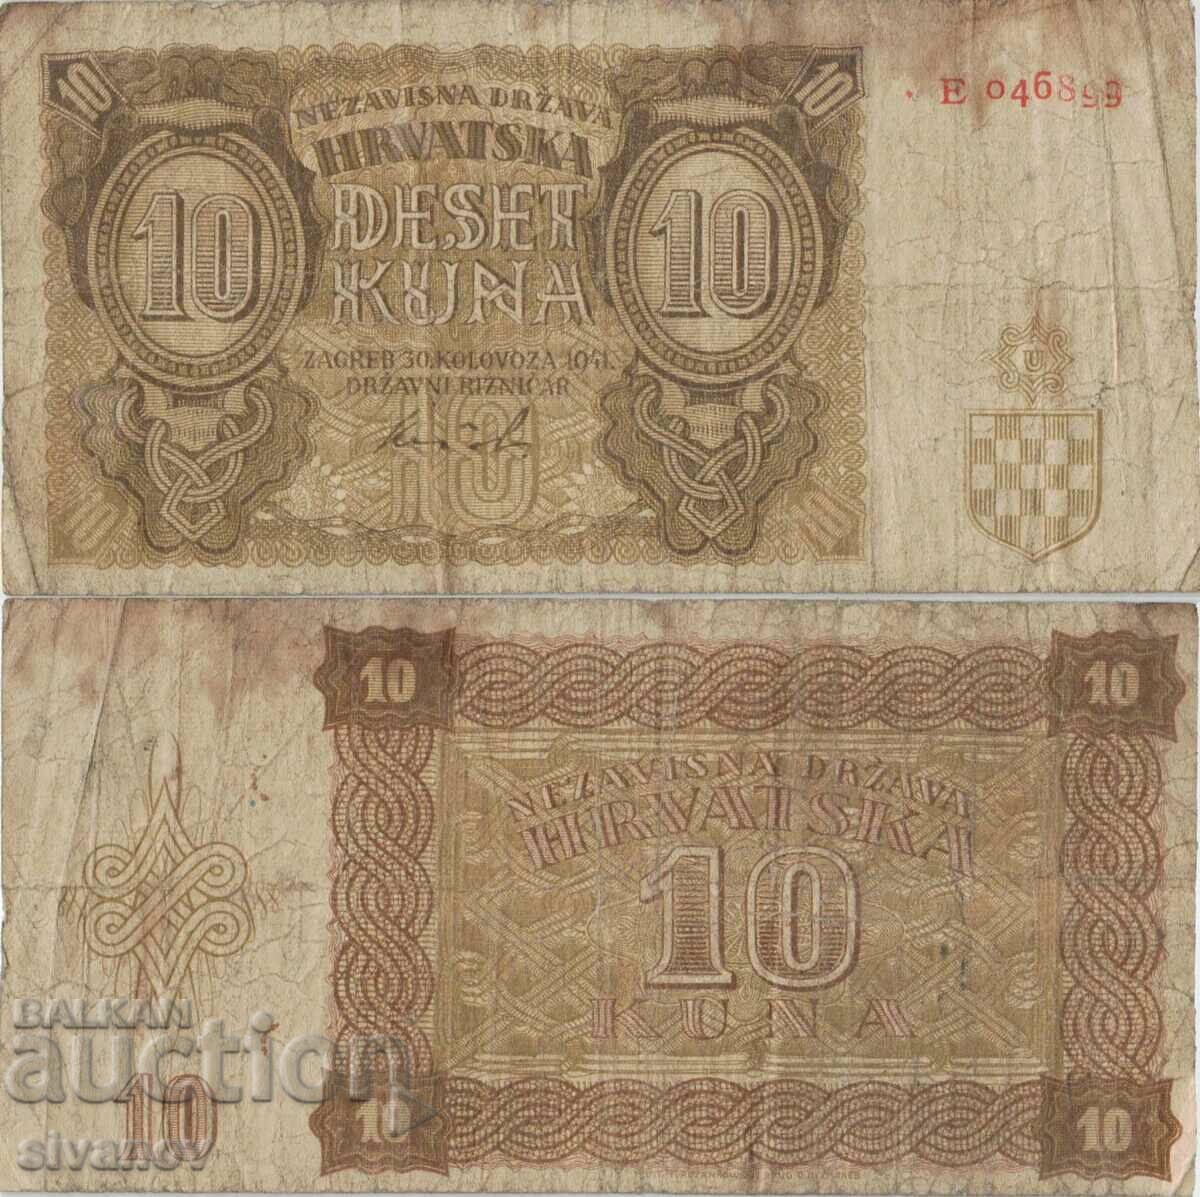 Croatia 10 kuna 1941 banknote #5323